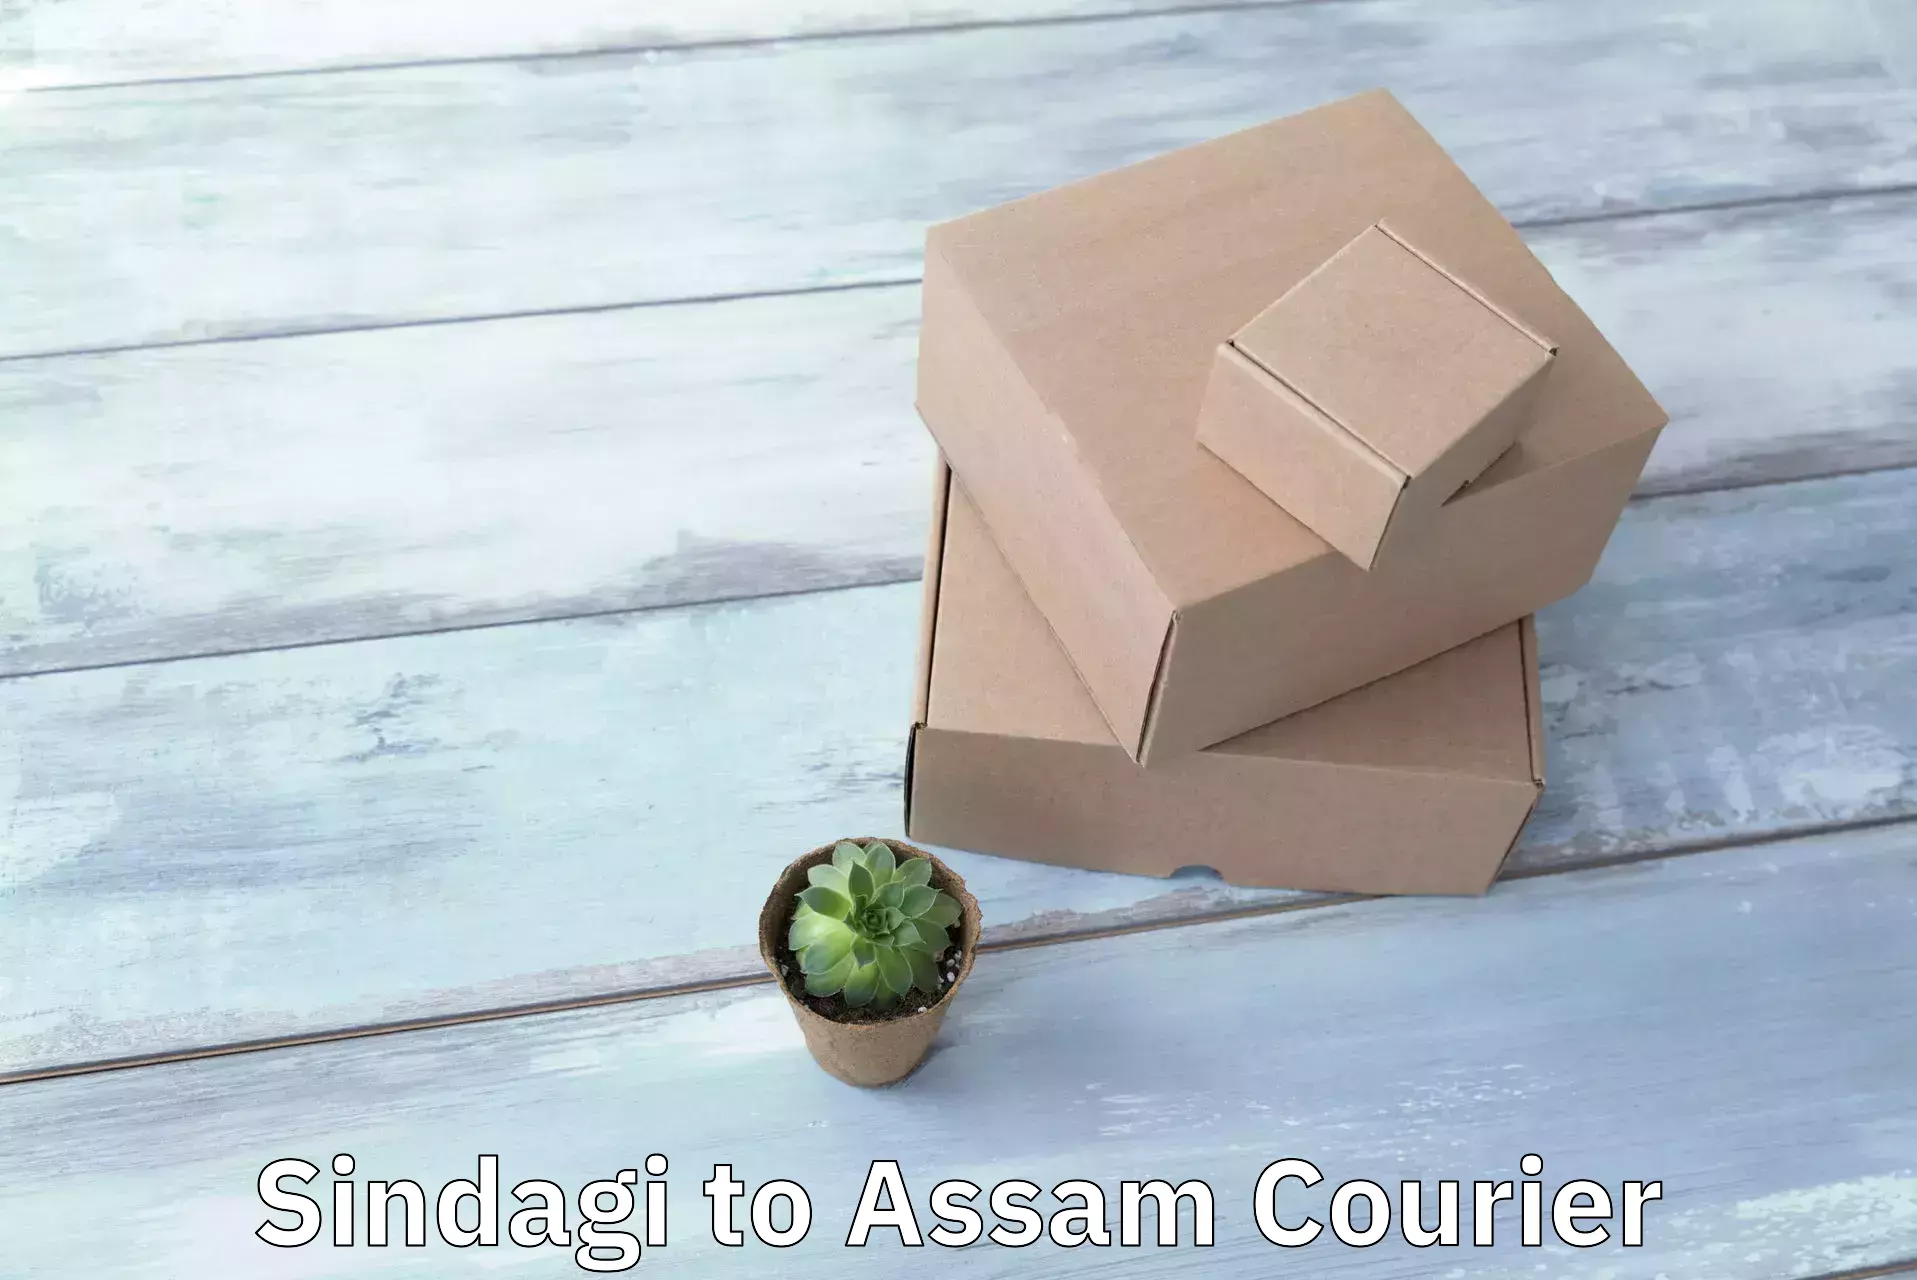 Courier service comparison Sindagi to Assam